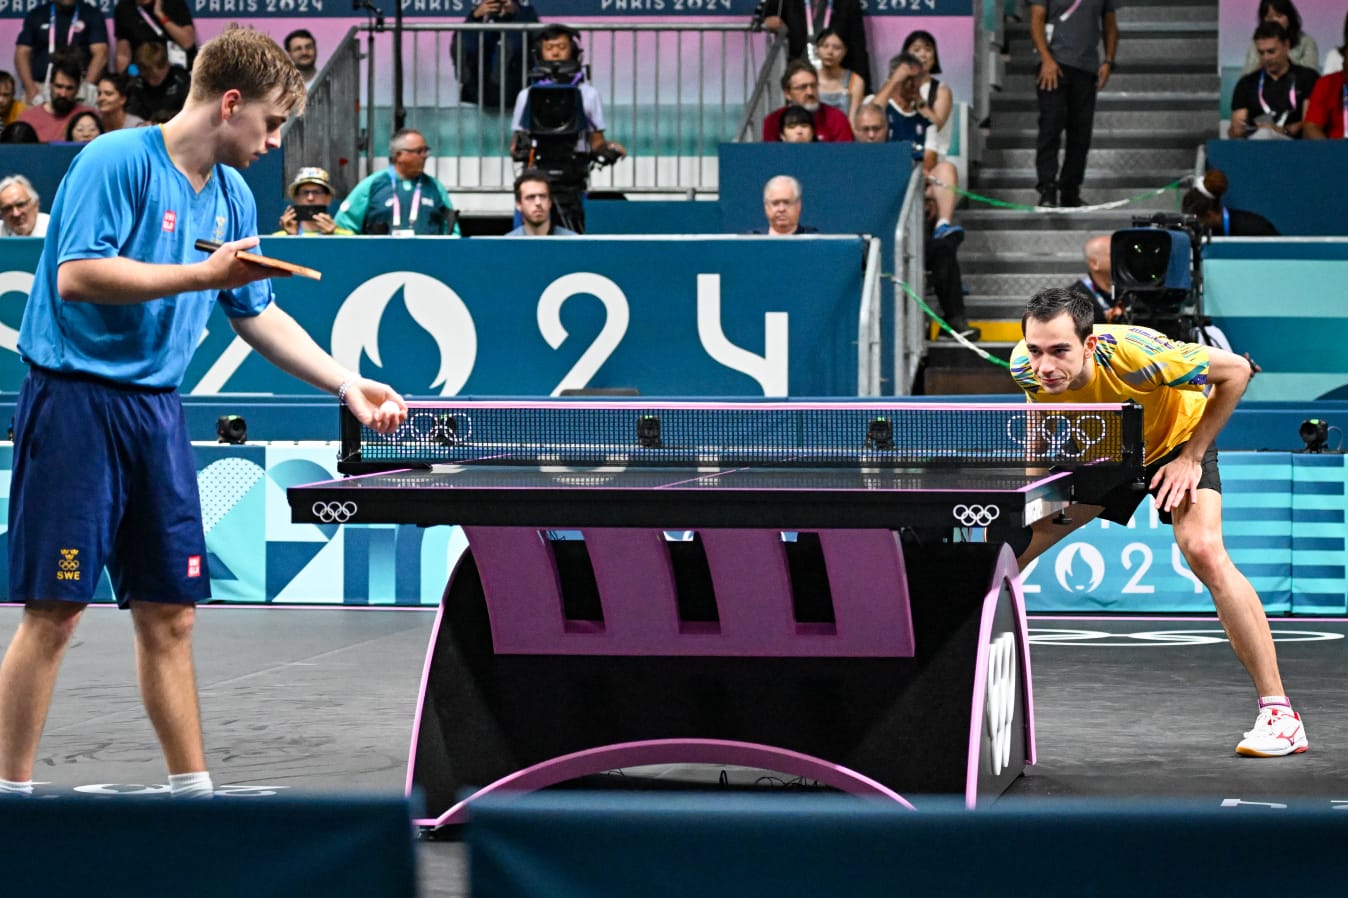 Jogo entre Hugo Calderano e Truls Moregard no tênis de mesa em Paris 2024 - (foto: Leandro COuri/EM/D.A Press)